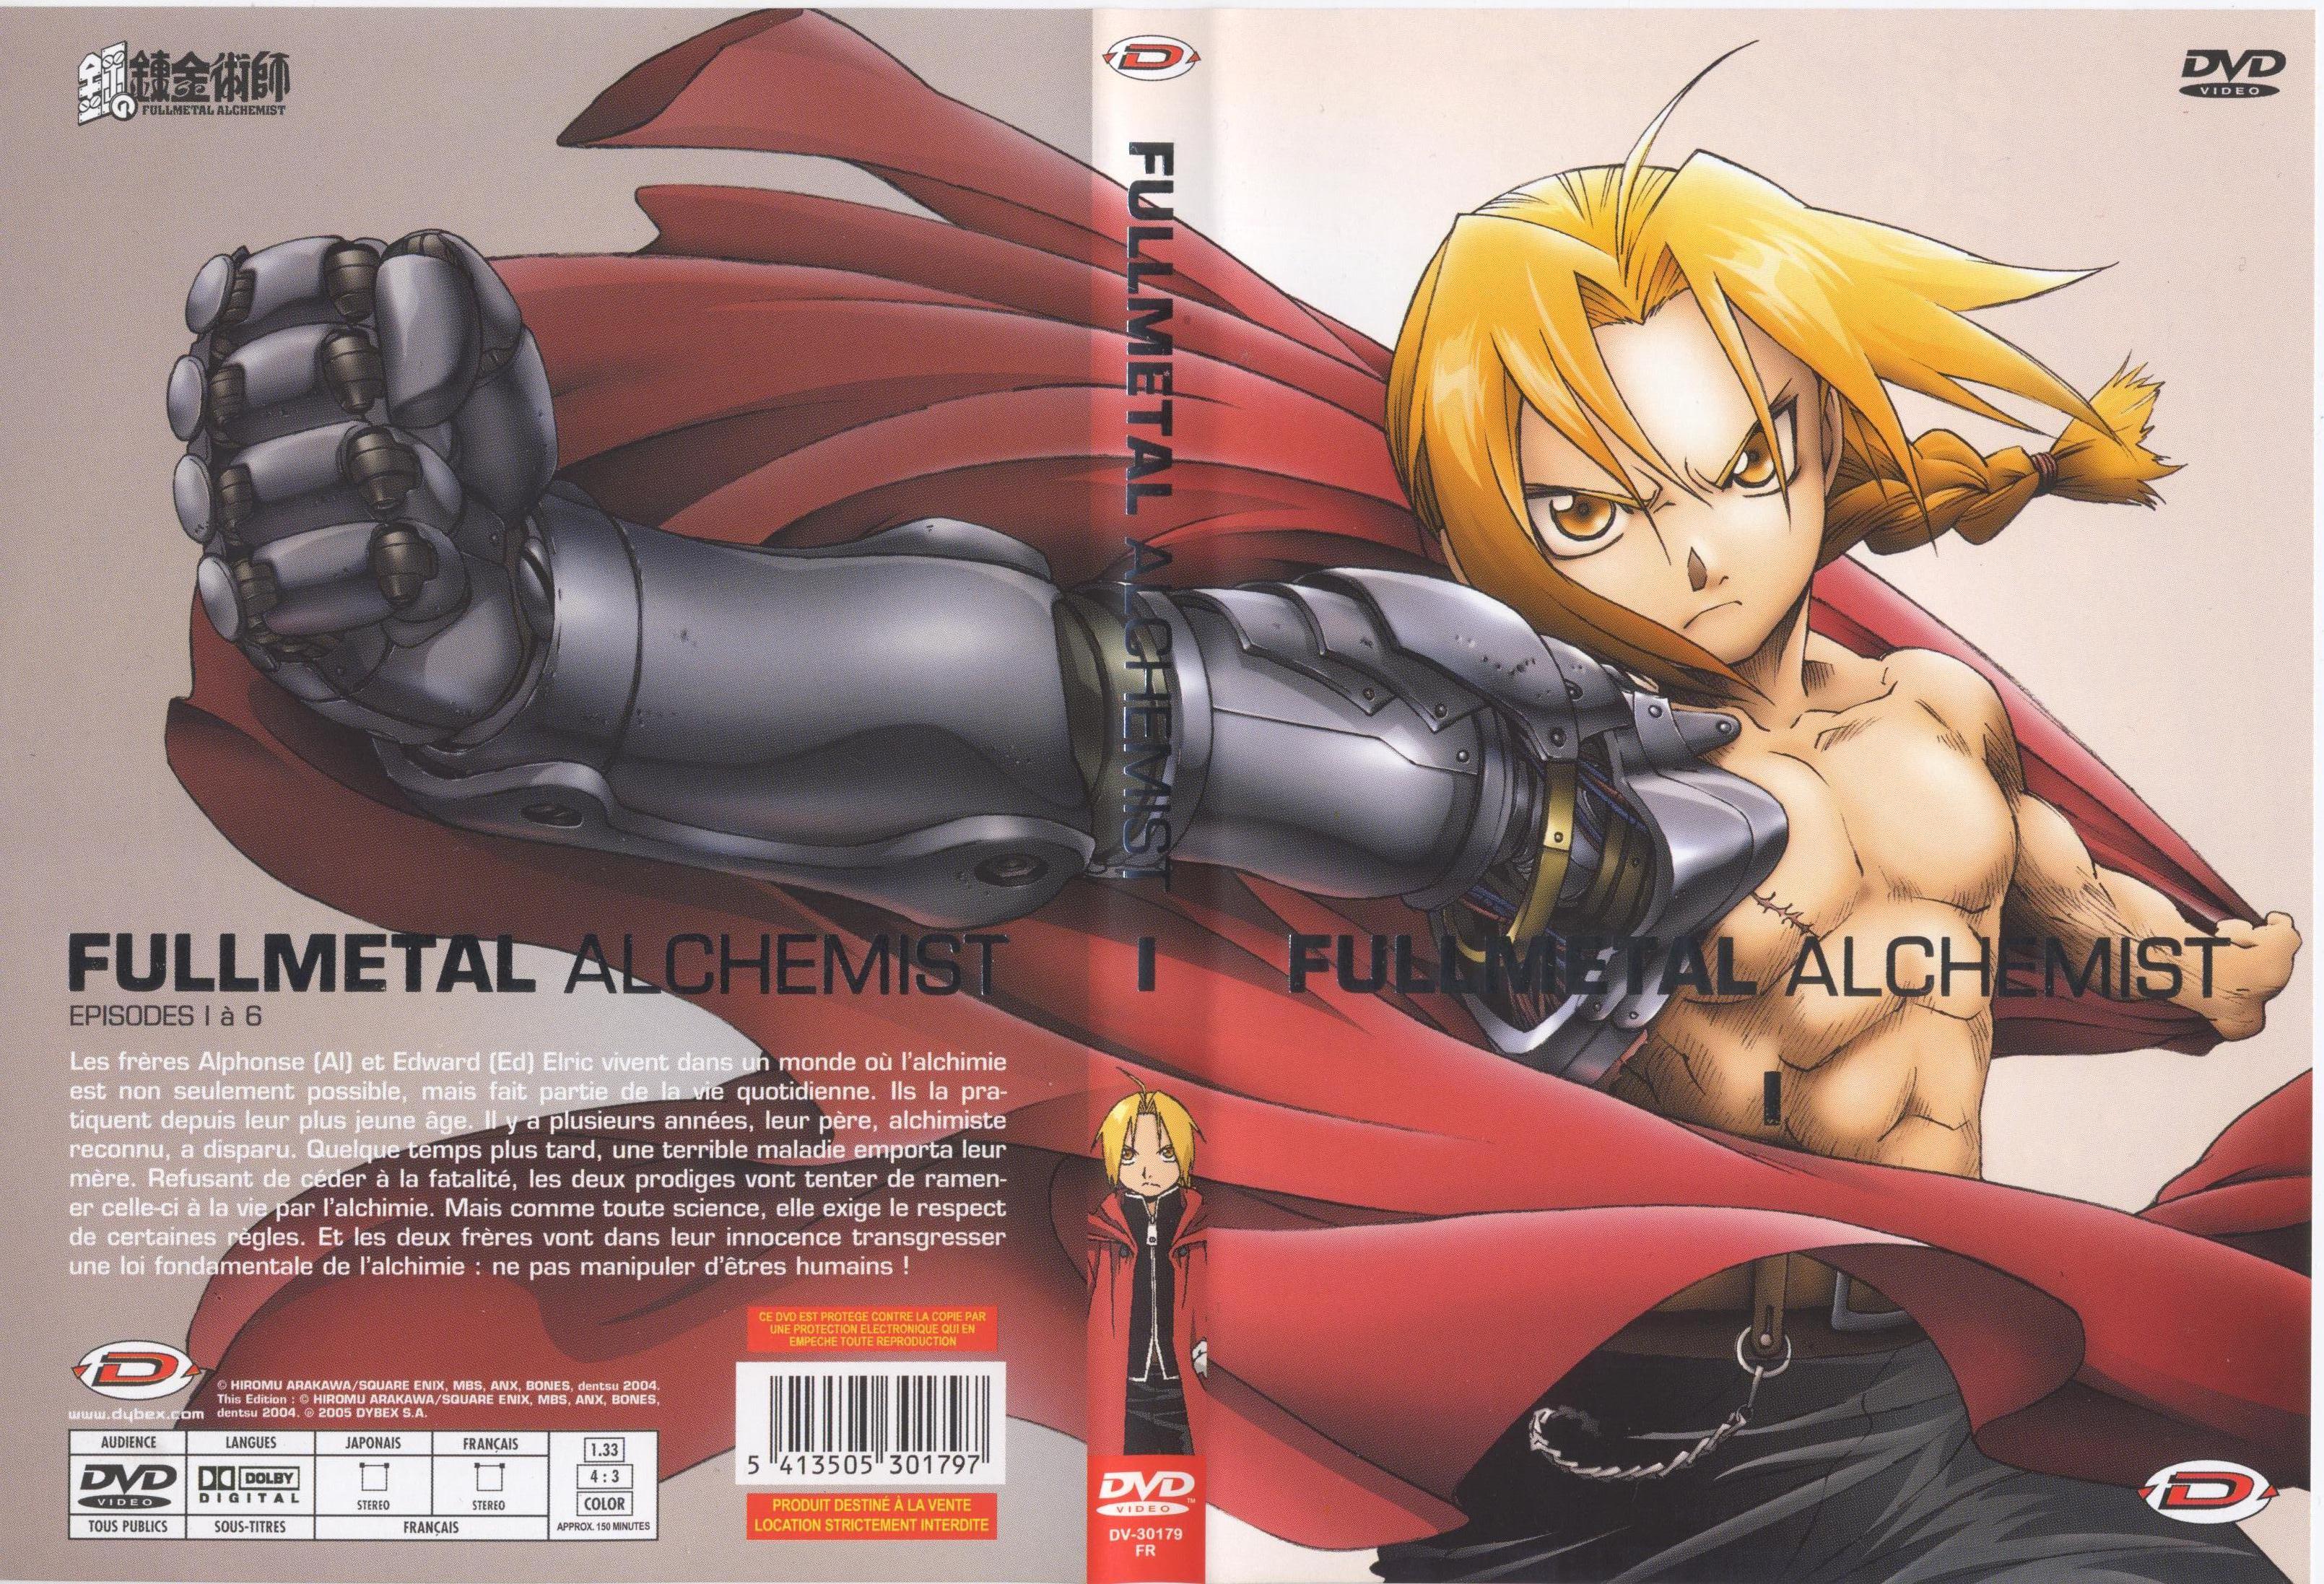 Jaquette DVD Fullmetal alchemist vol 1